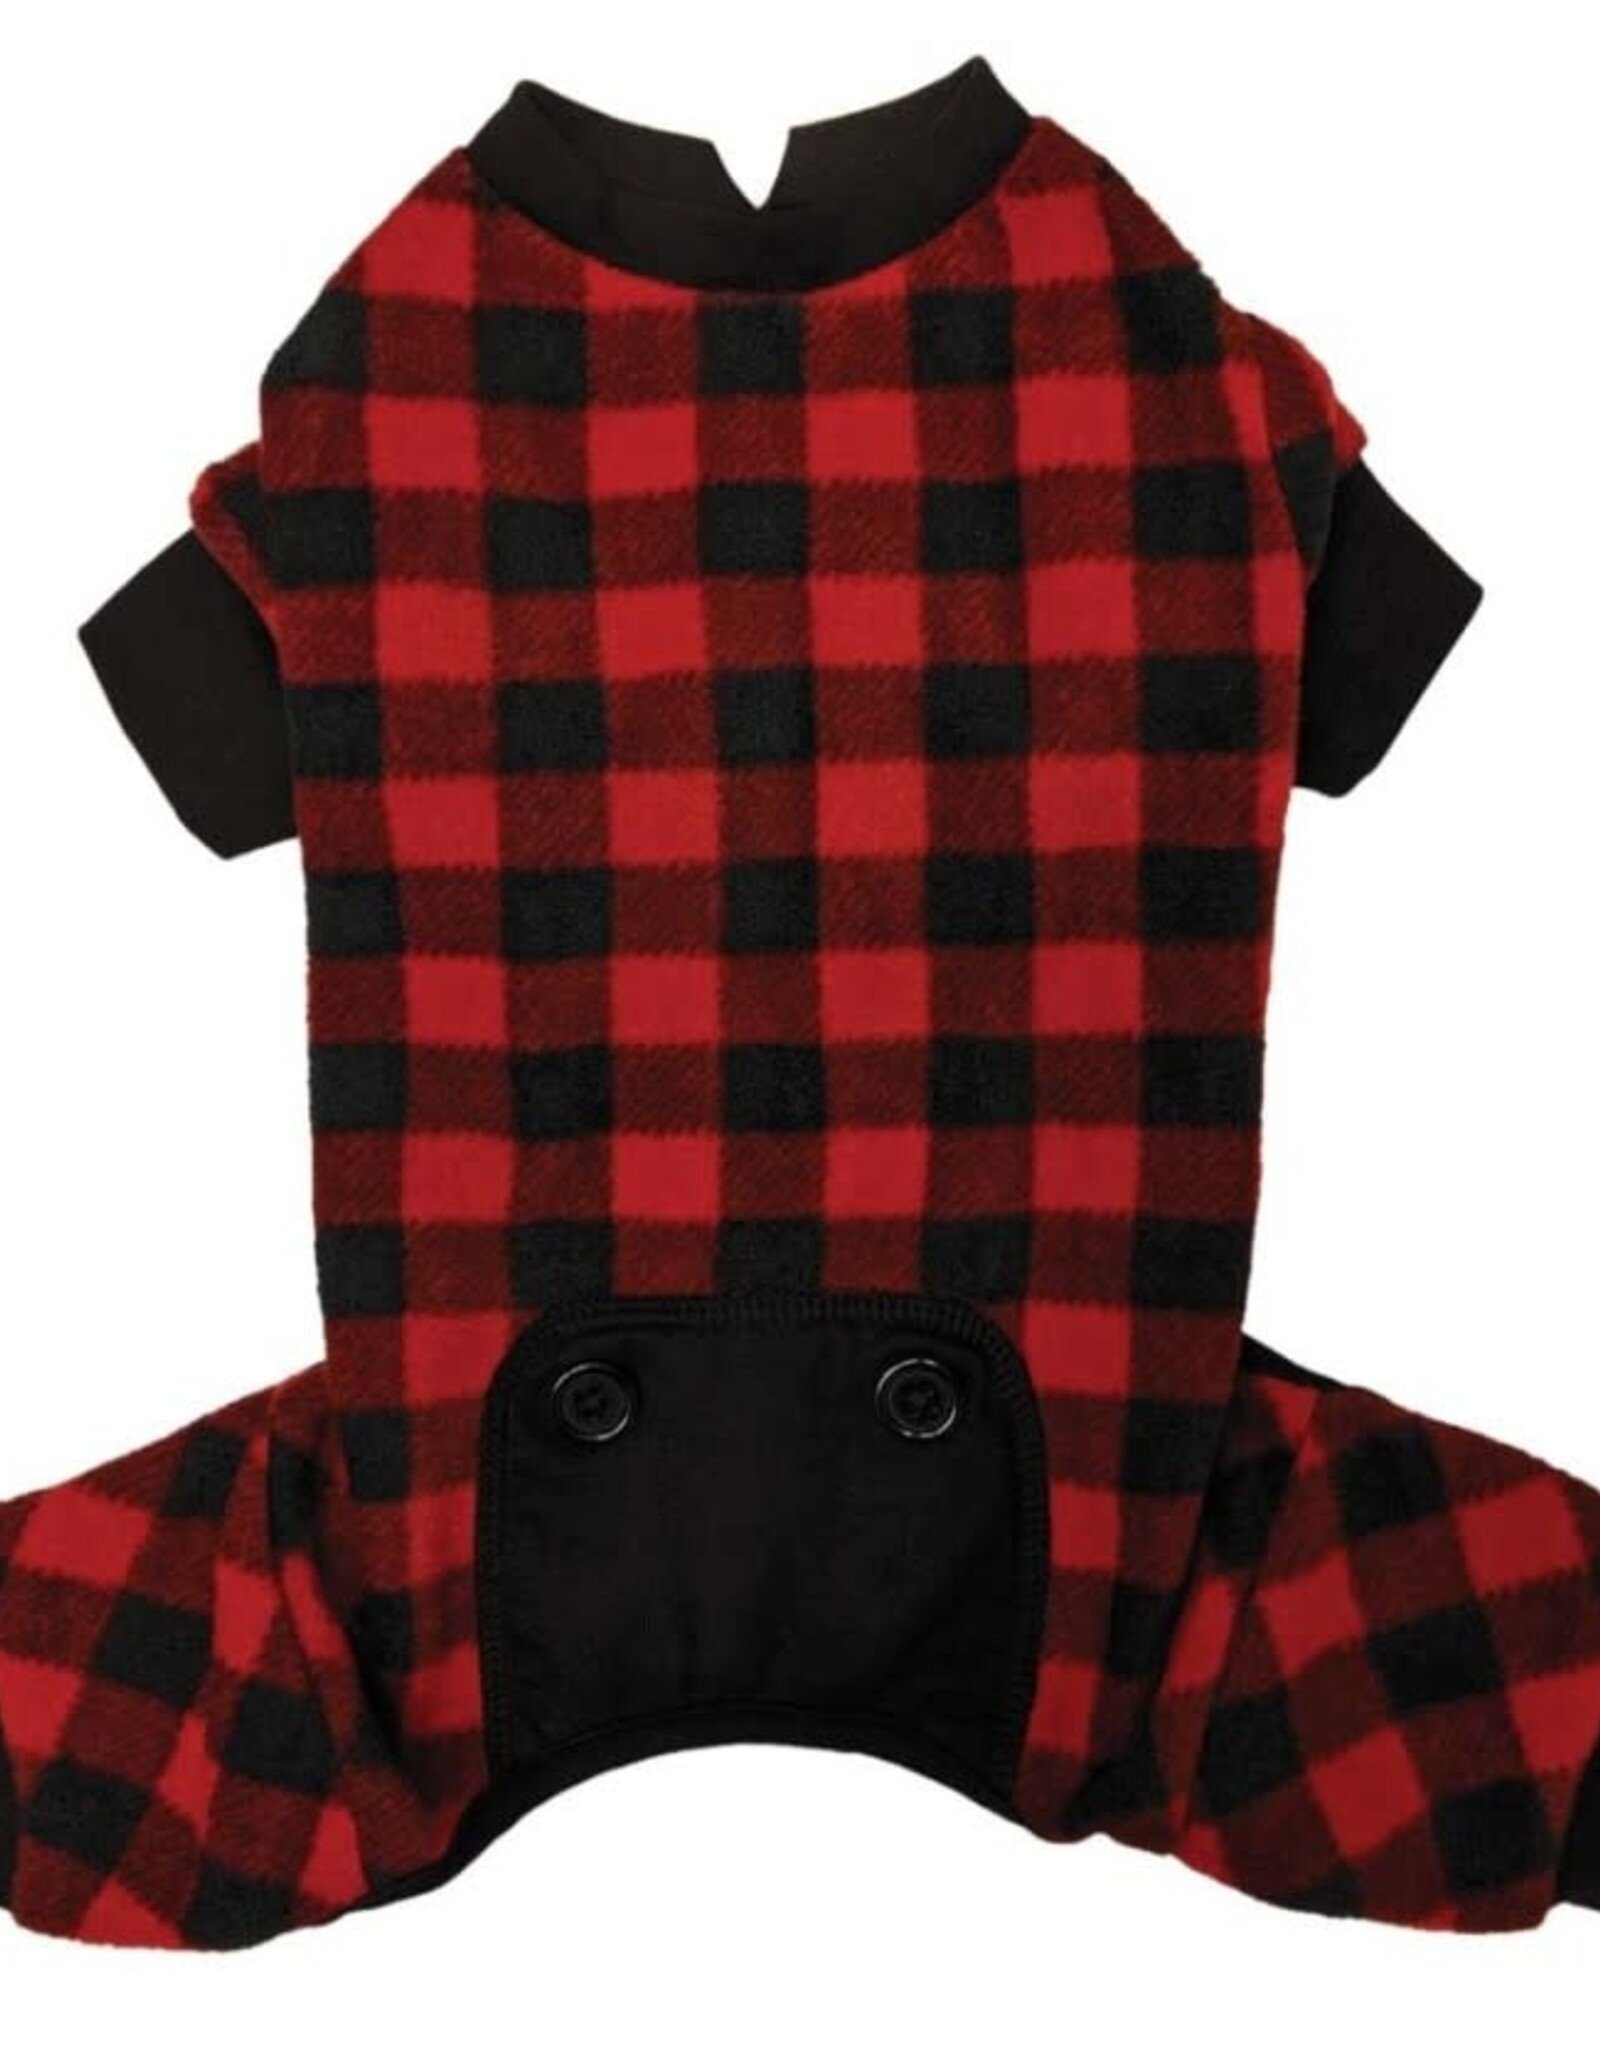 FASHION PET (ETHICAL) FAS Buffalo Plaid Pajamas Red Medium